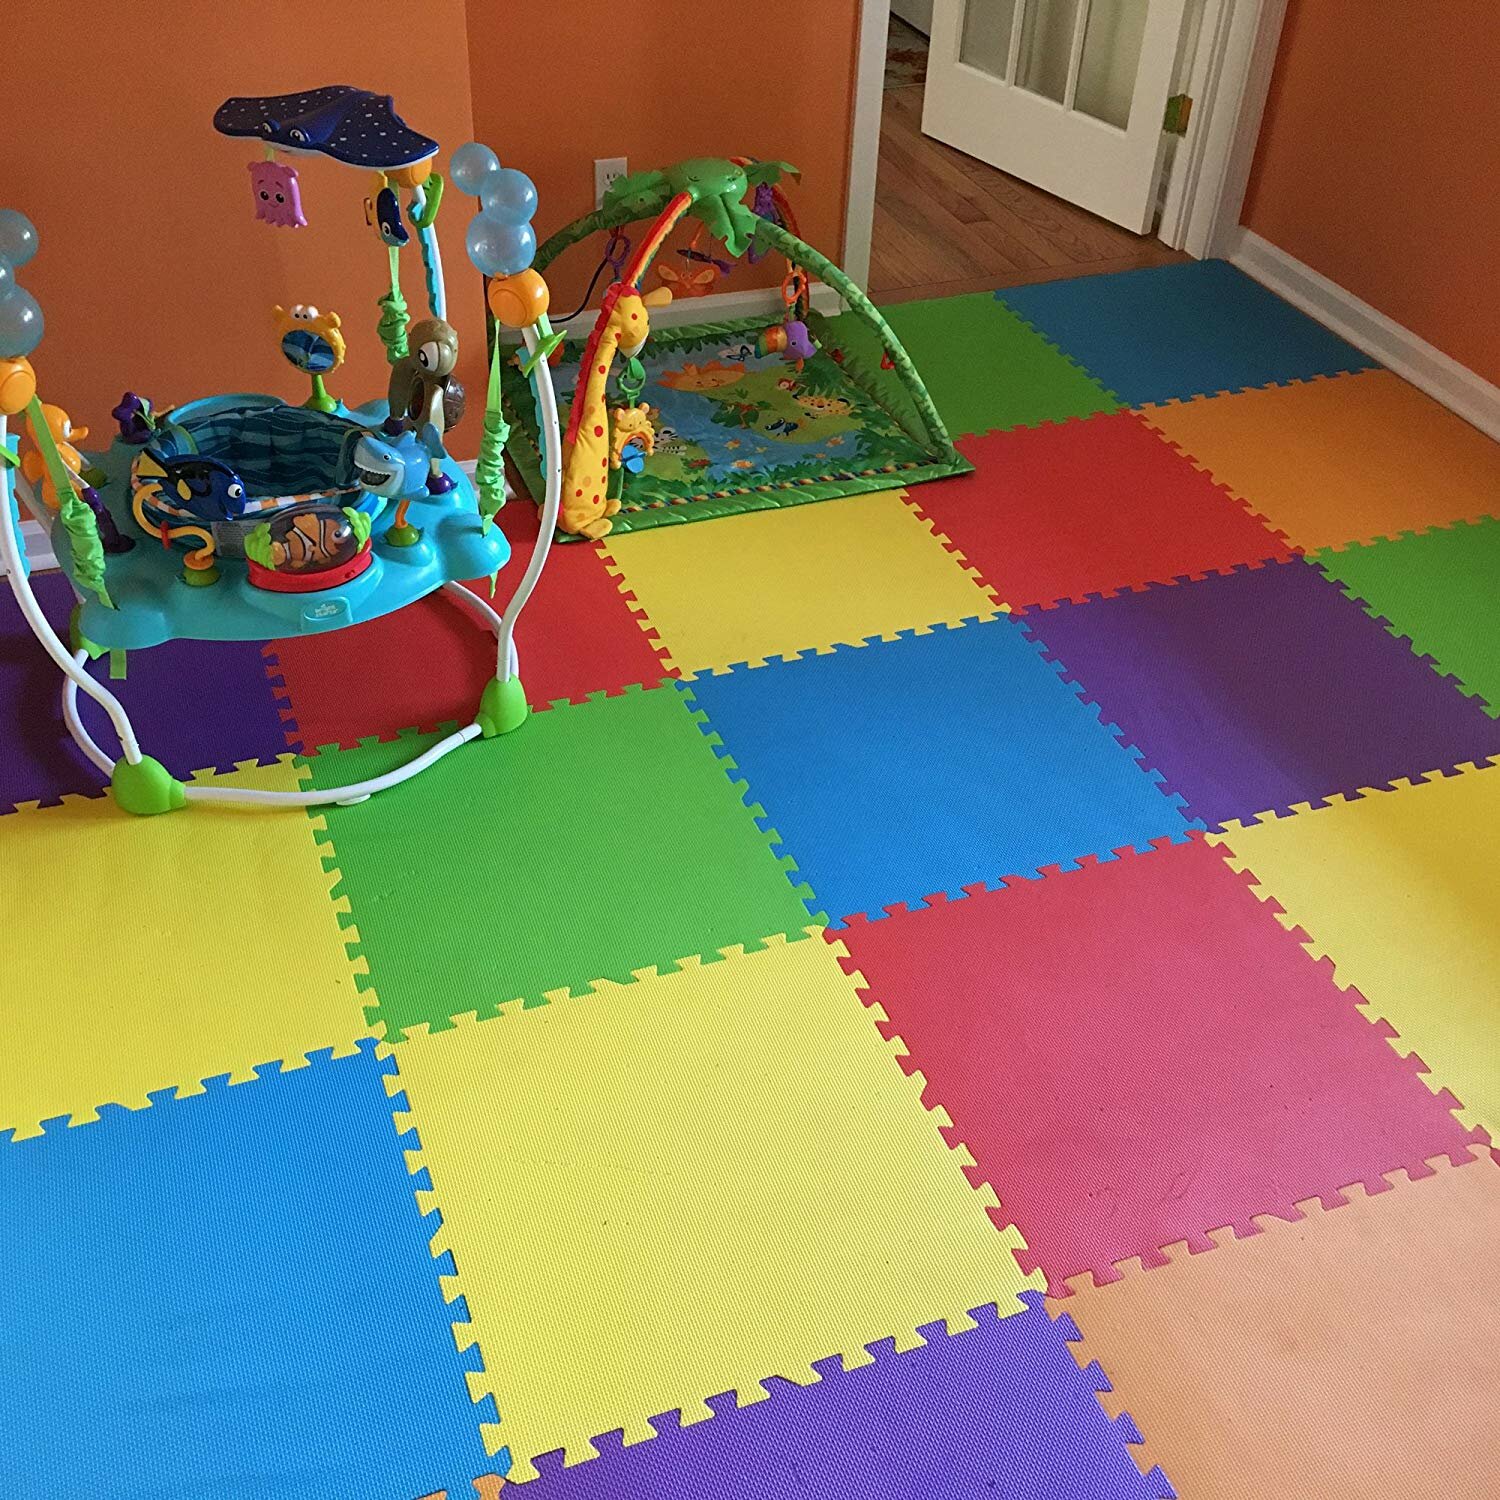 Details about   Eva Floor Blue Mat Interlocking Garden Play Soft Foam Mats Tiles Kids 30x30 CM 